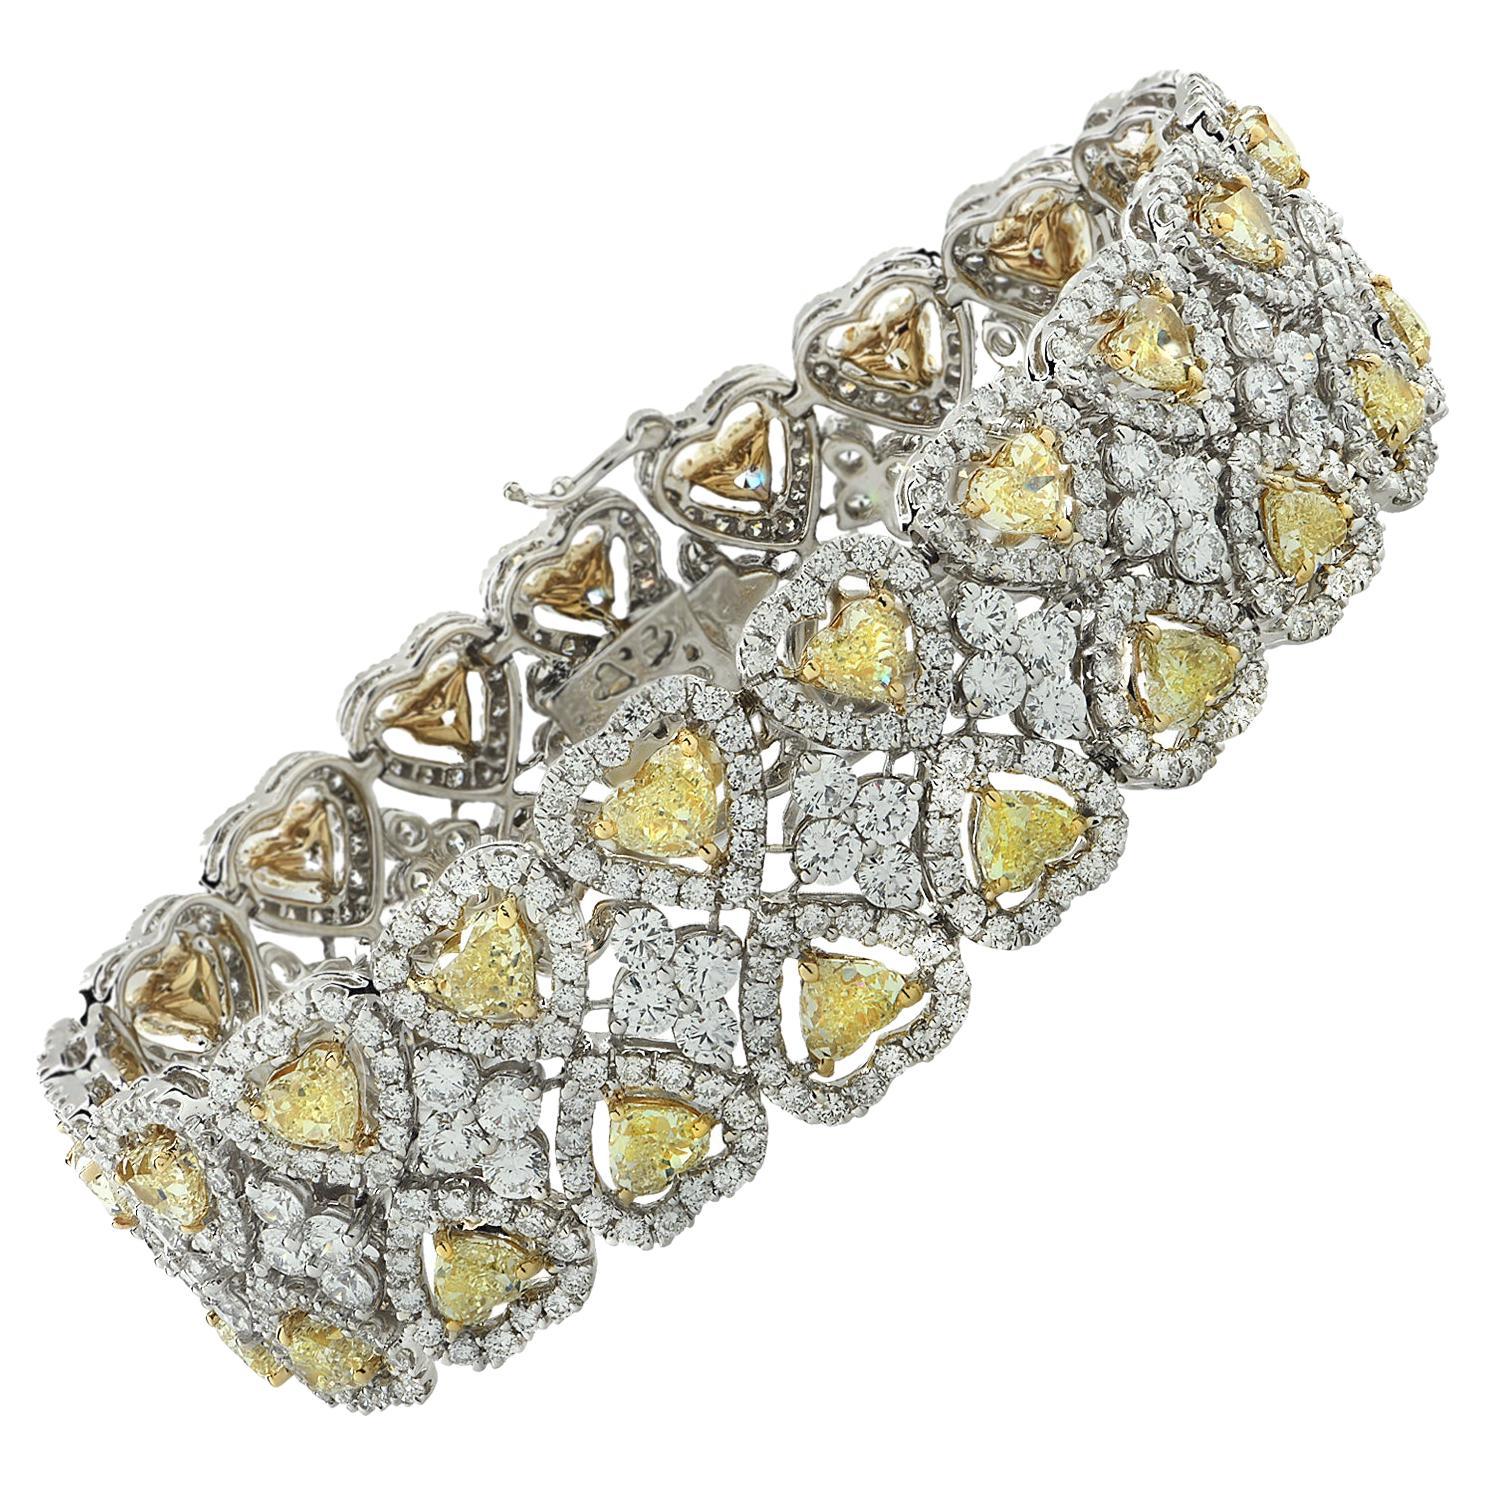 26.04 Carat Fancy Yellow Heart Shape Diamond Halo Bracelet